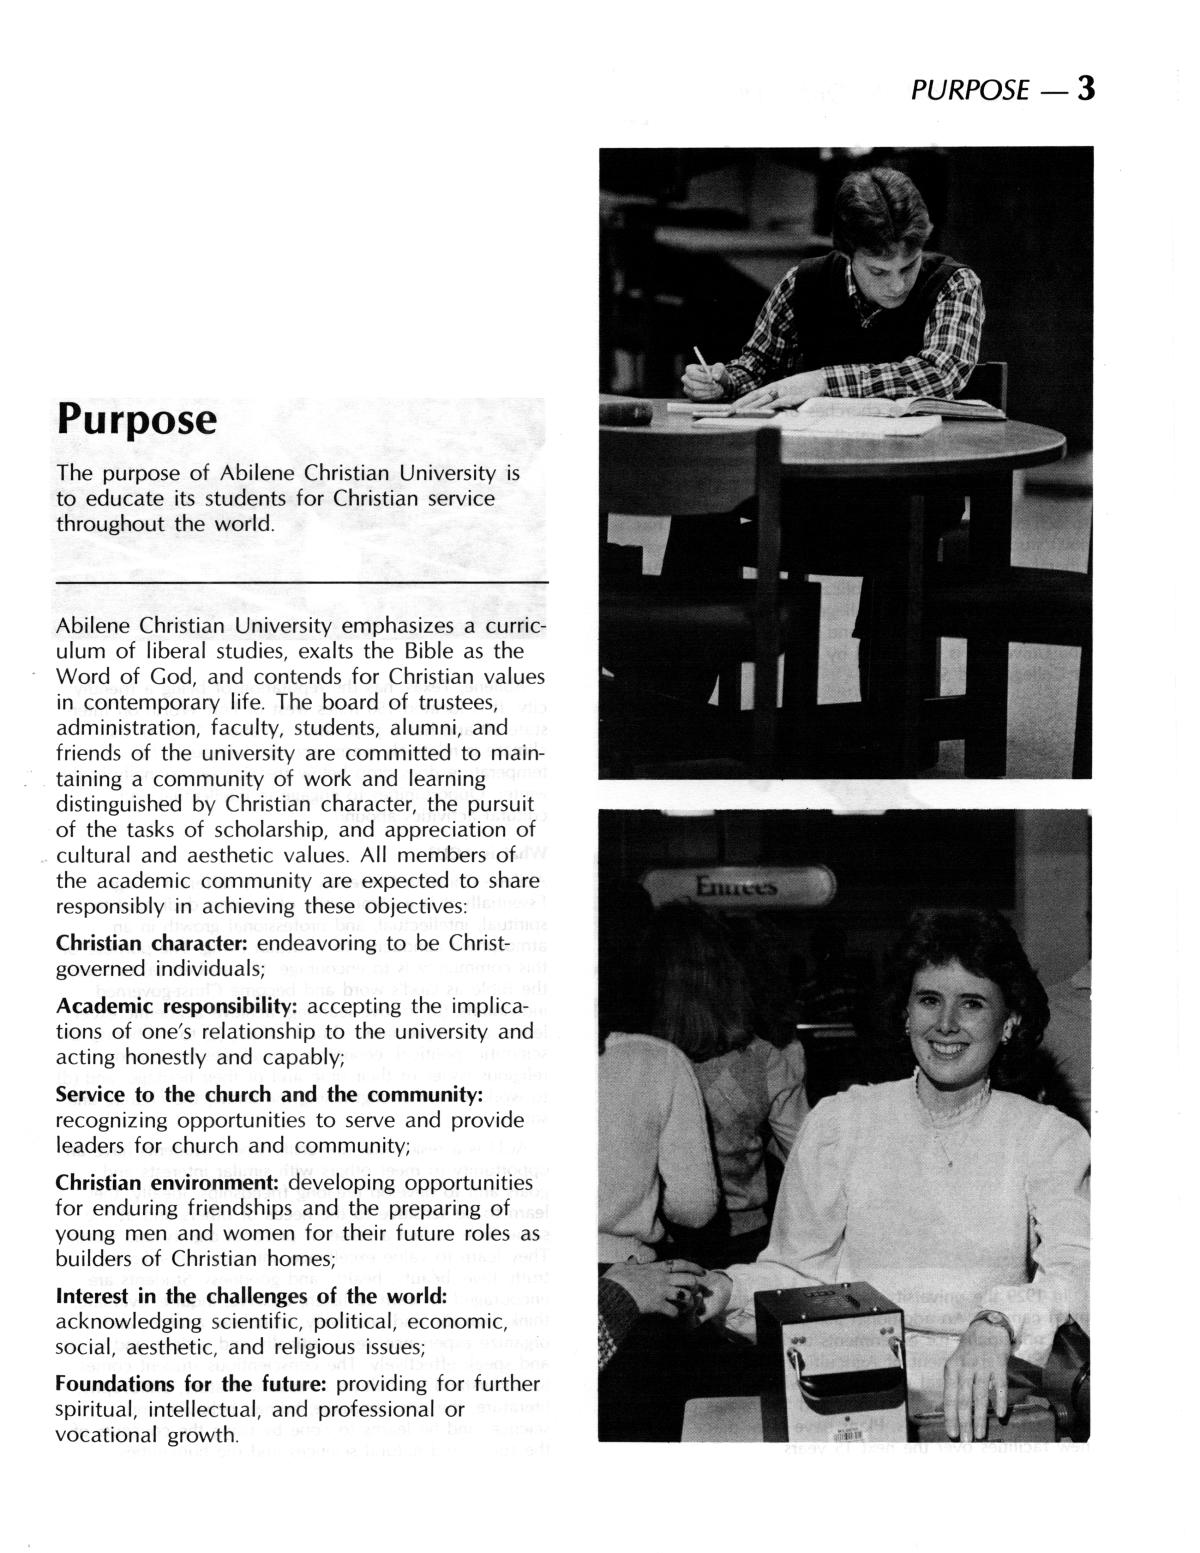 Catalog of Abilene Christian University, 1986-1987
                                                
                                                    3
                                                